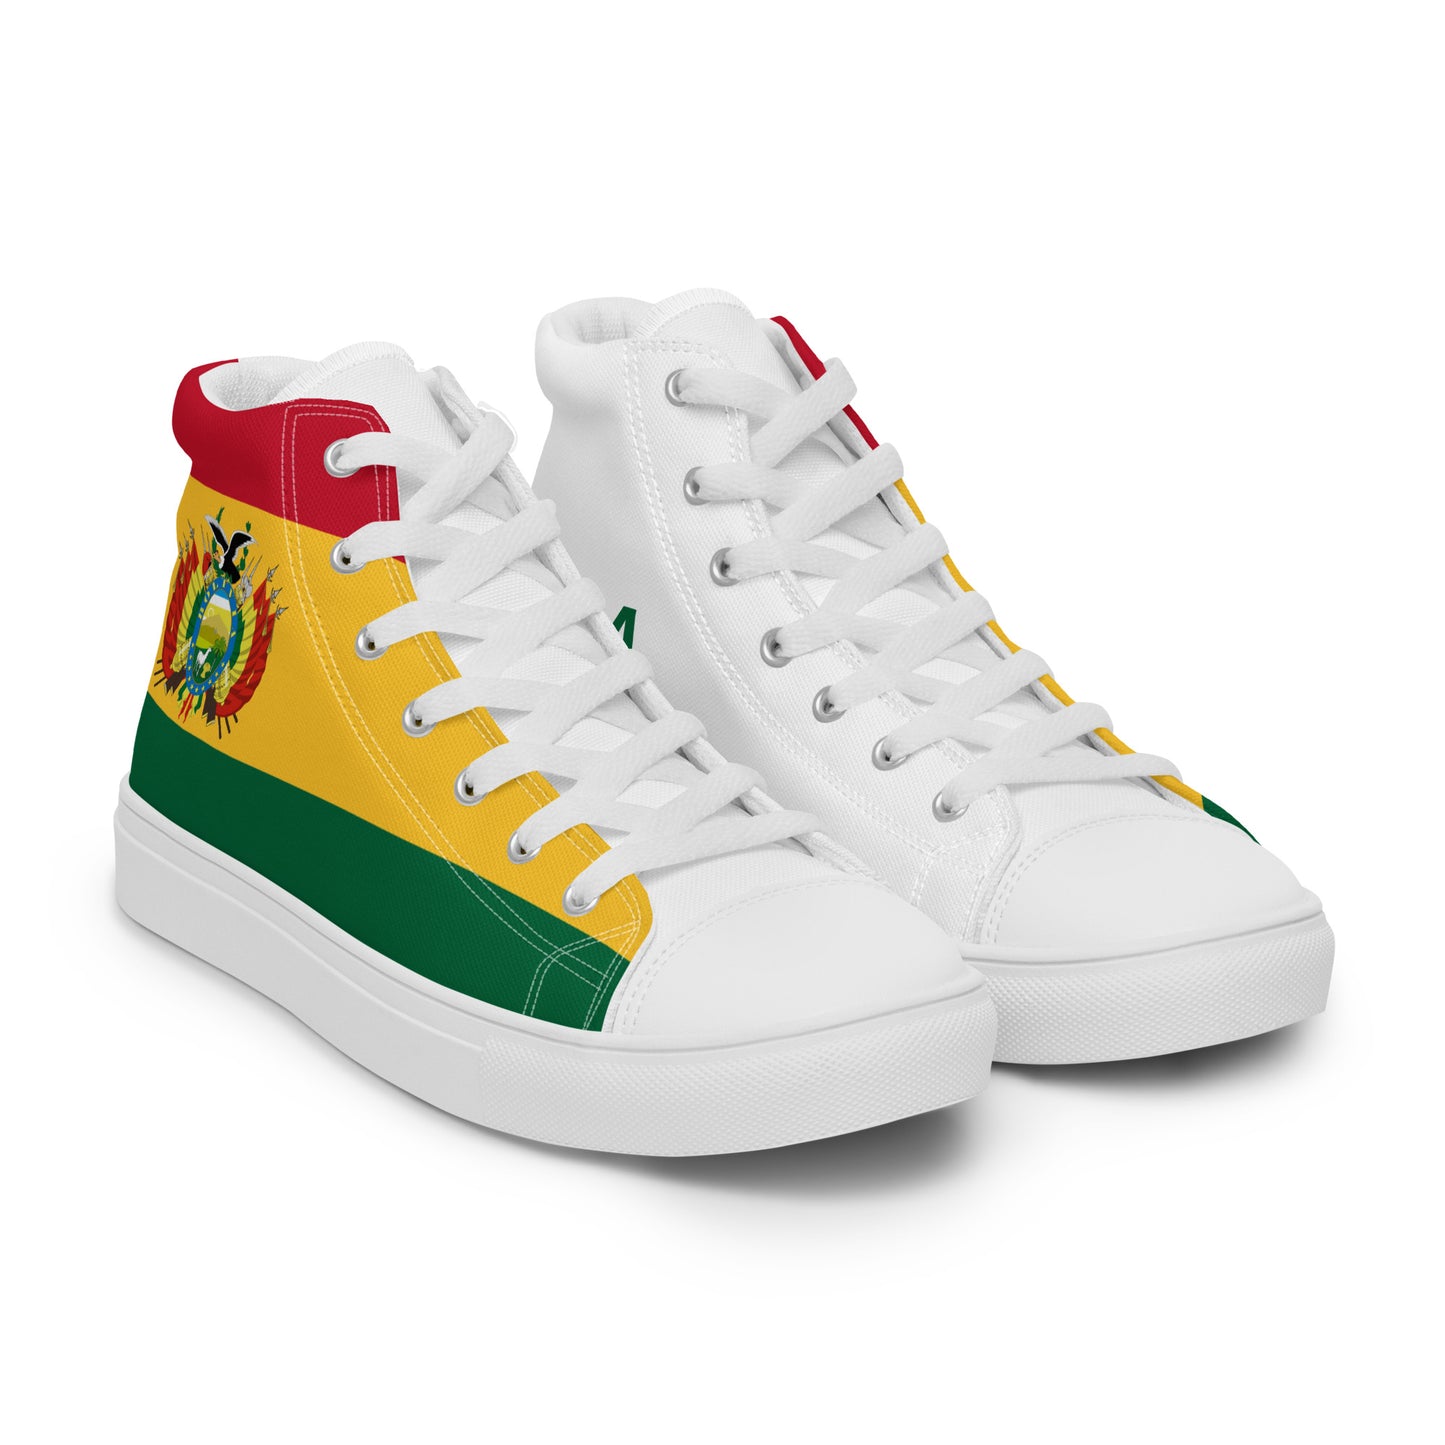 Bolivia - Hombre - Bandera - Zapatos High top